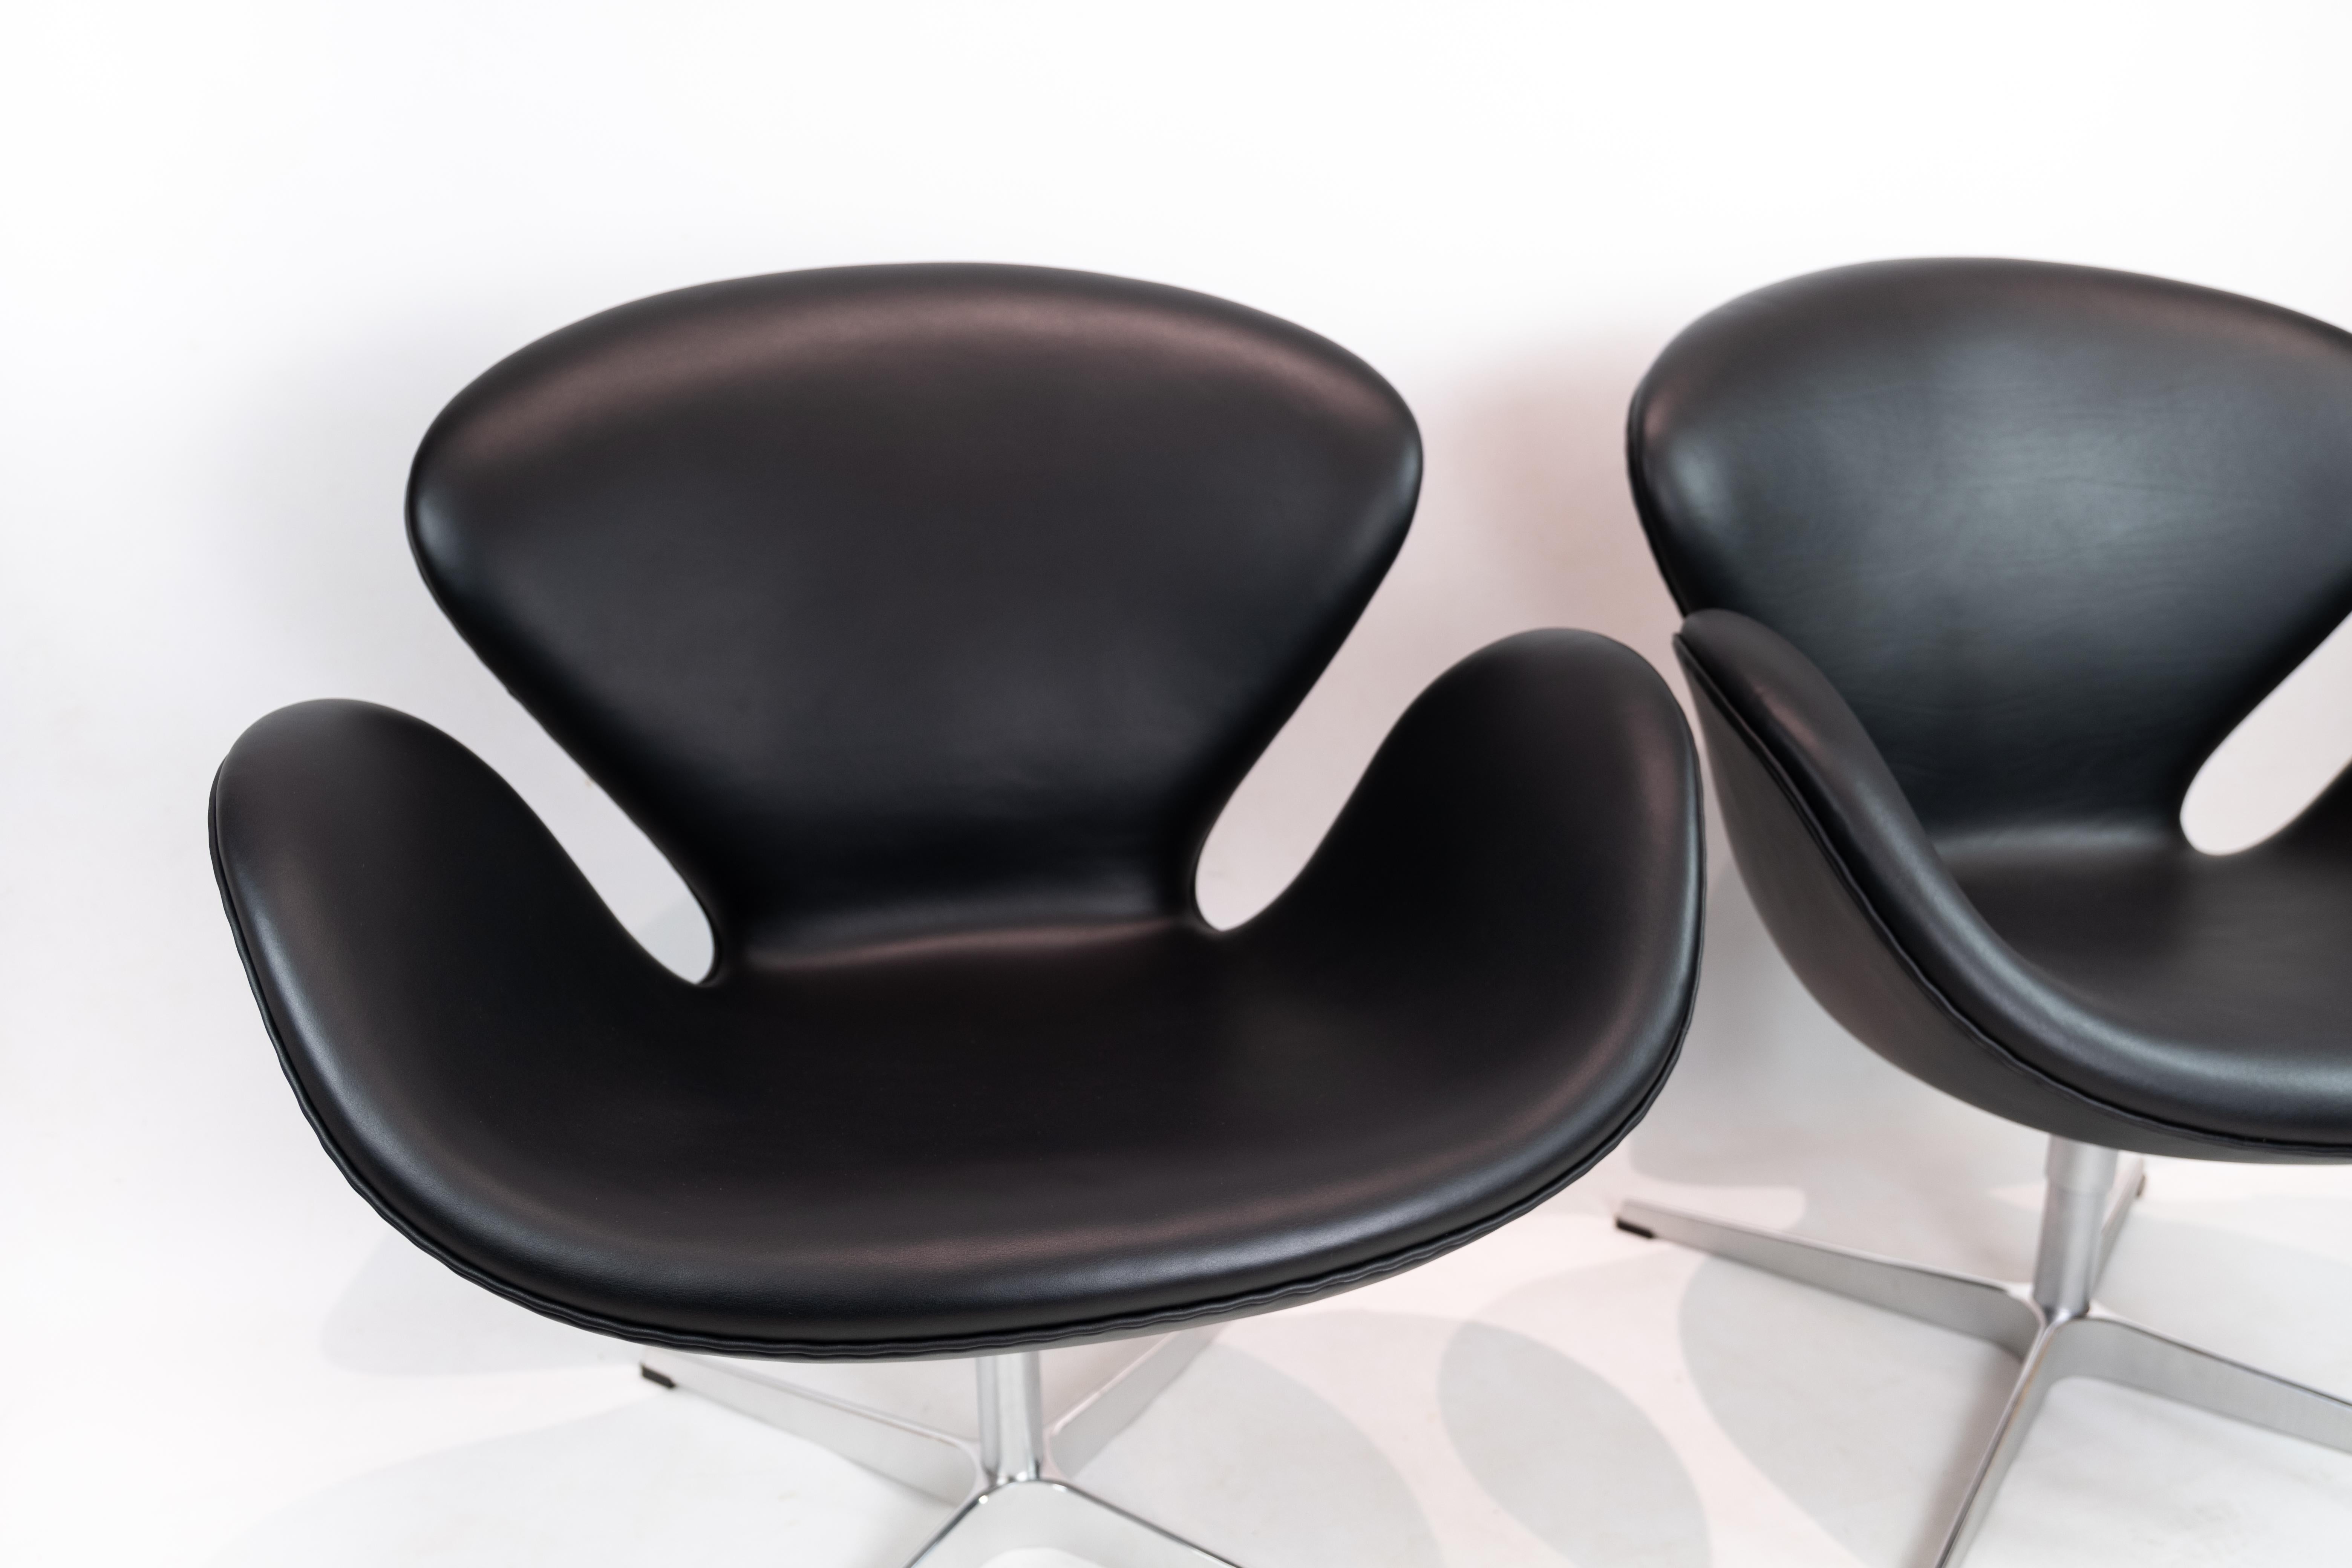 Une paire de chaises cygnes, modèle 3320, conçue par Arne Jacobsen en 1958 et fabriquée par Fritz Hansen. Les fauteuils sont recouverts d'un cuir noir d'origine.